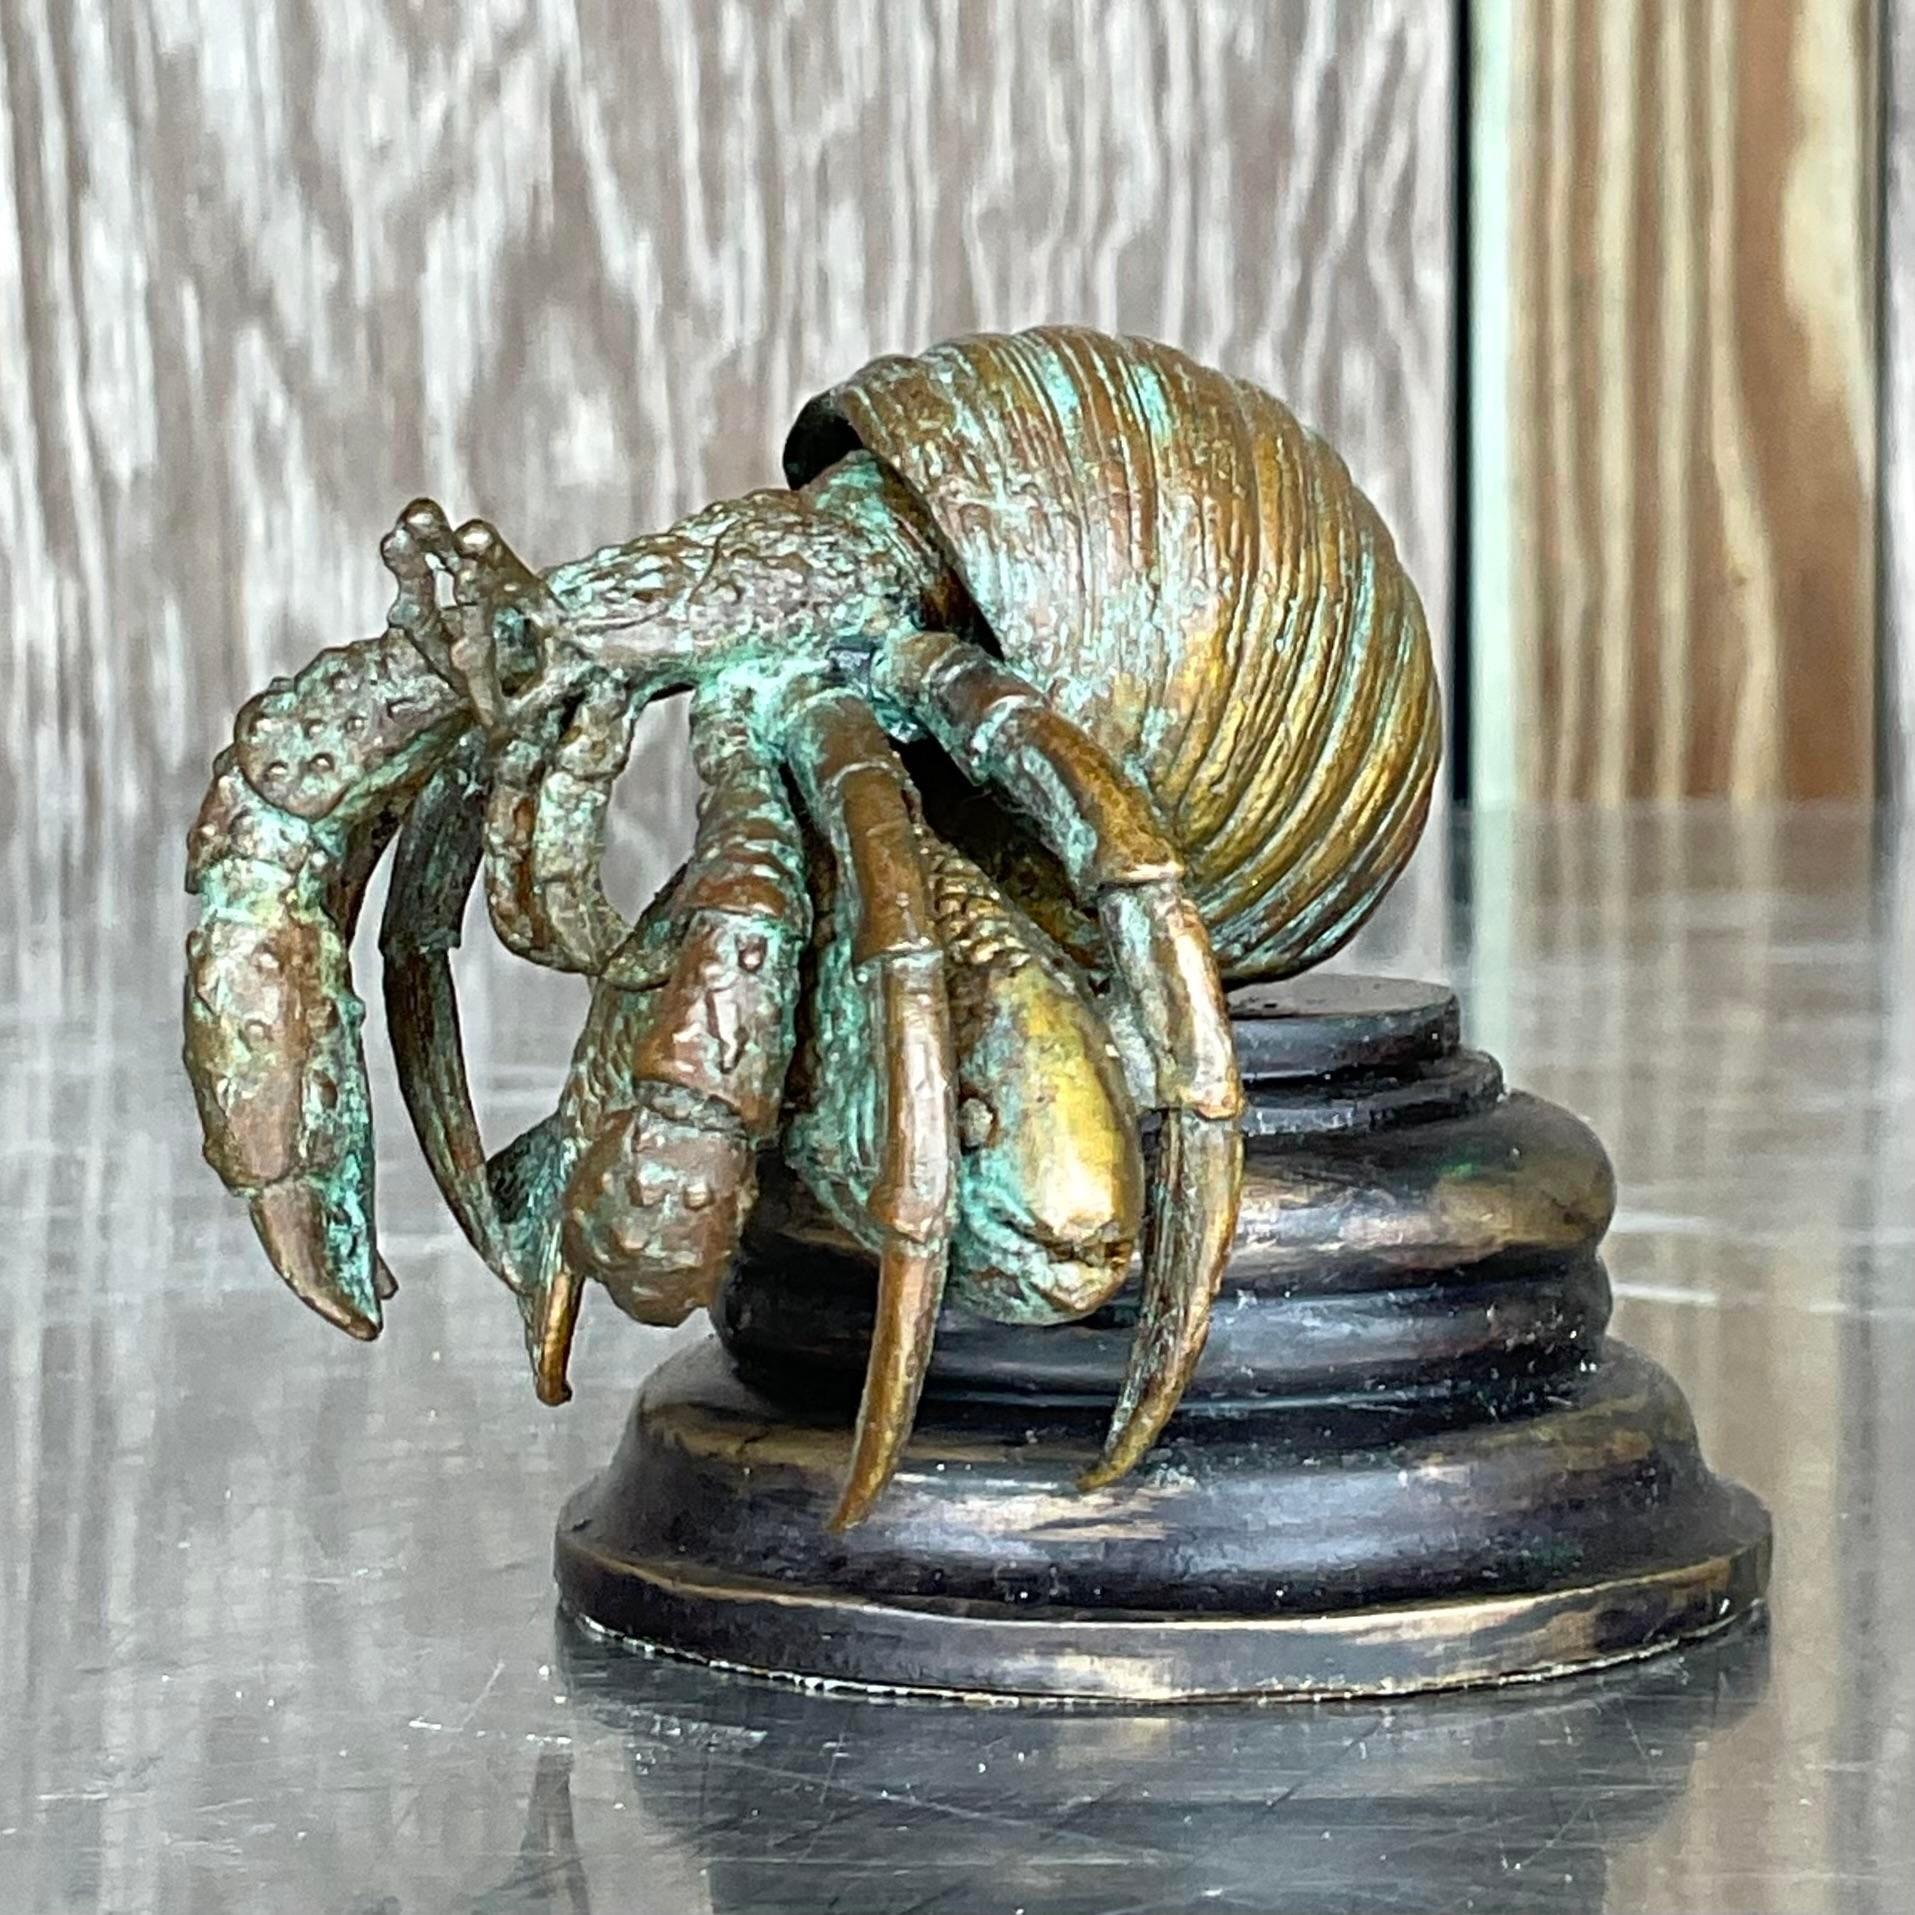 Un fantastique bernard-l'hermite côtier vintage. Un crabe chic en bronze patiné sur un socle en bois fraisé. Fabriqué par l'emblématique groupe Maitland Smith et étiqueté sur le fond. Acquis auprès d'une succession de Palm Beach.